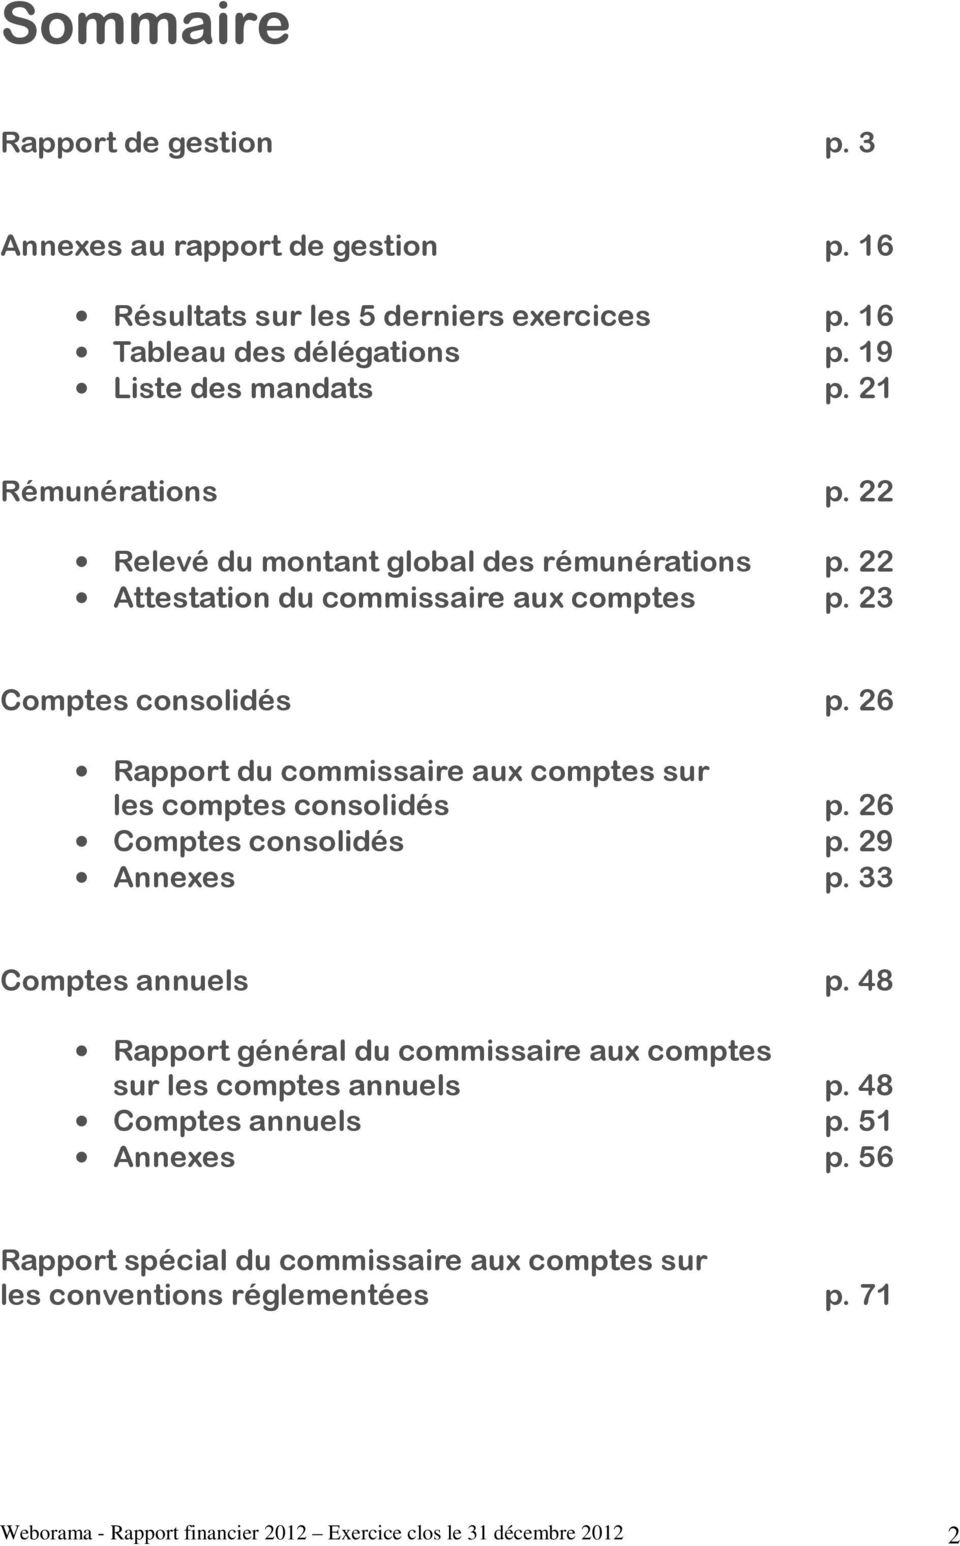 26 Rapport du commissaire aux comptes sur les comptes consolidés p. 26 Comptes consolidés p. 29 Annexes p. 33 Comptes annuels p.